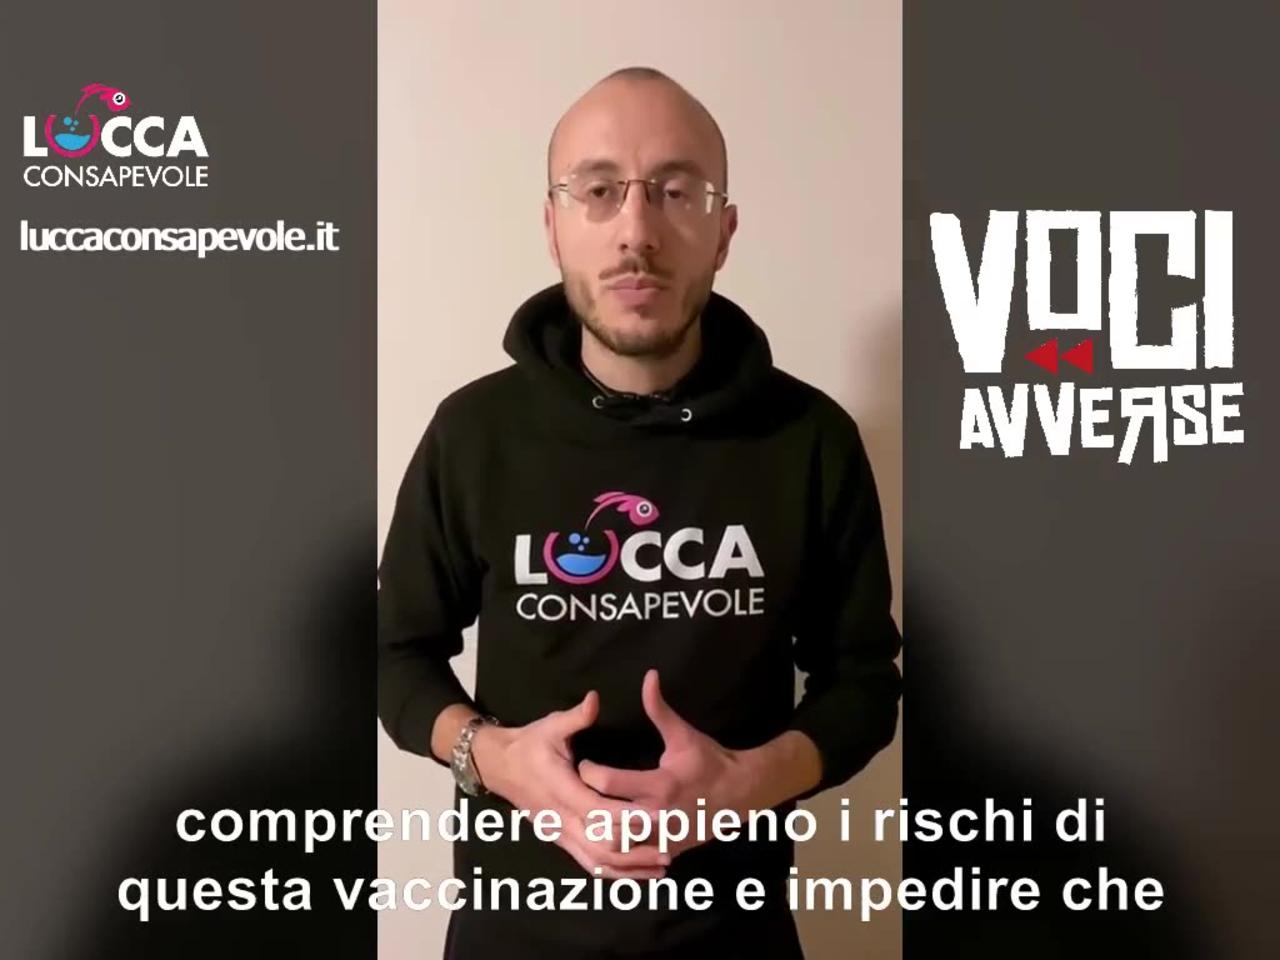 Voci Avverse by Lucca Consapevole - Presentazione progetto